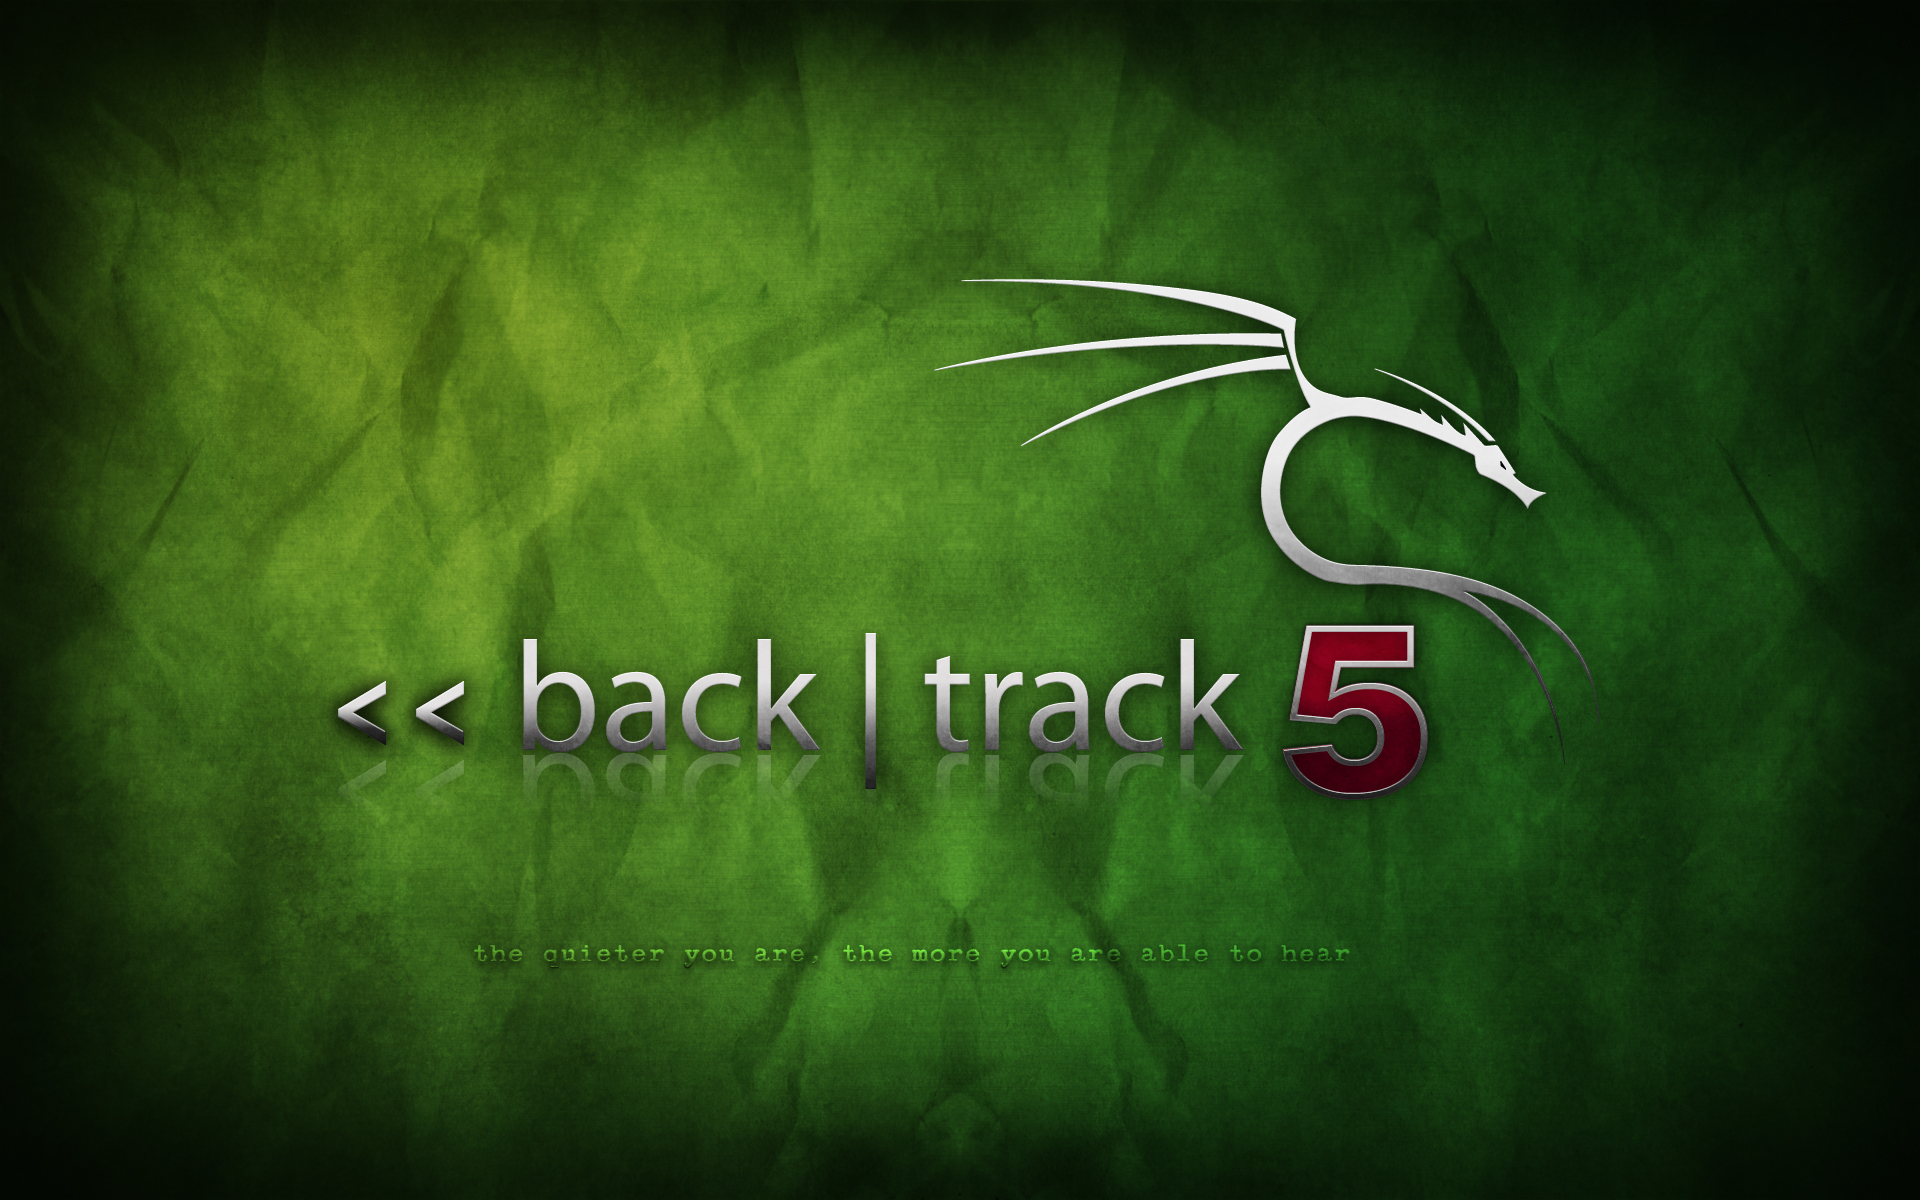 backtrack-5-green-2.png